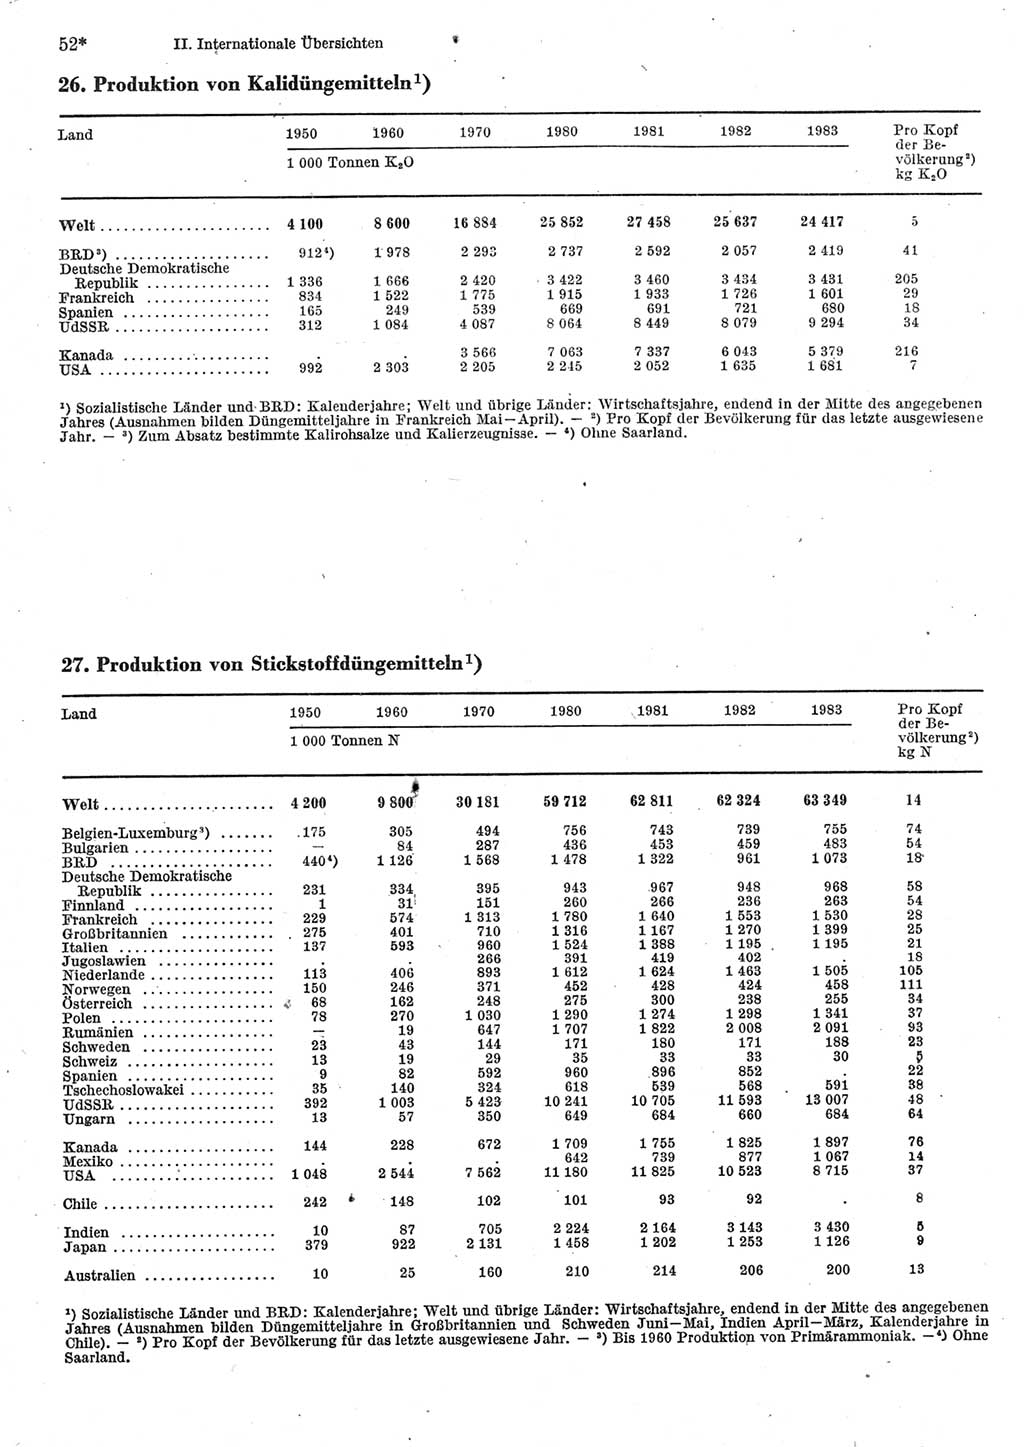 Statistisches Jahrbuch der Deutschen Demokratischen Republik (DDR) 1985, Seite 52 (Stat. Jb. DDR 1985, S. 52)